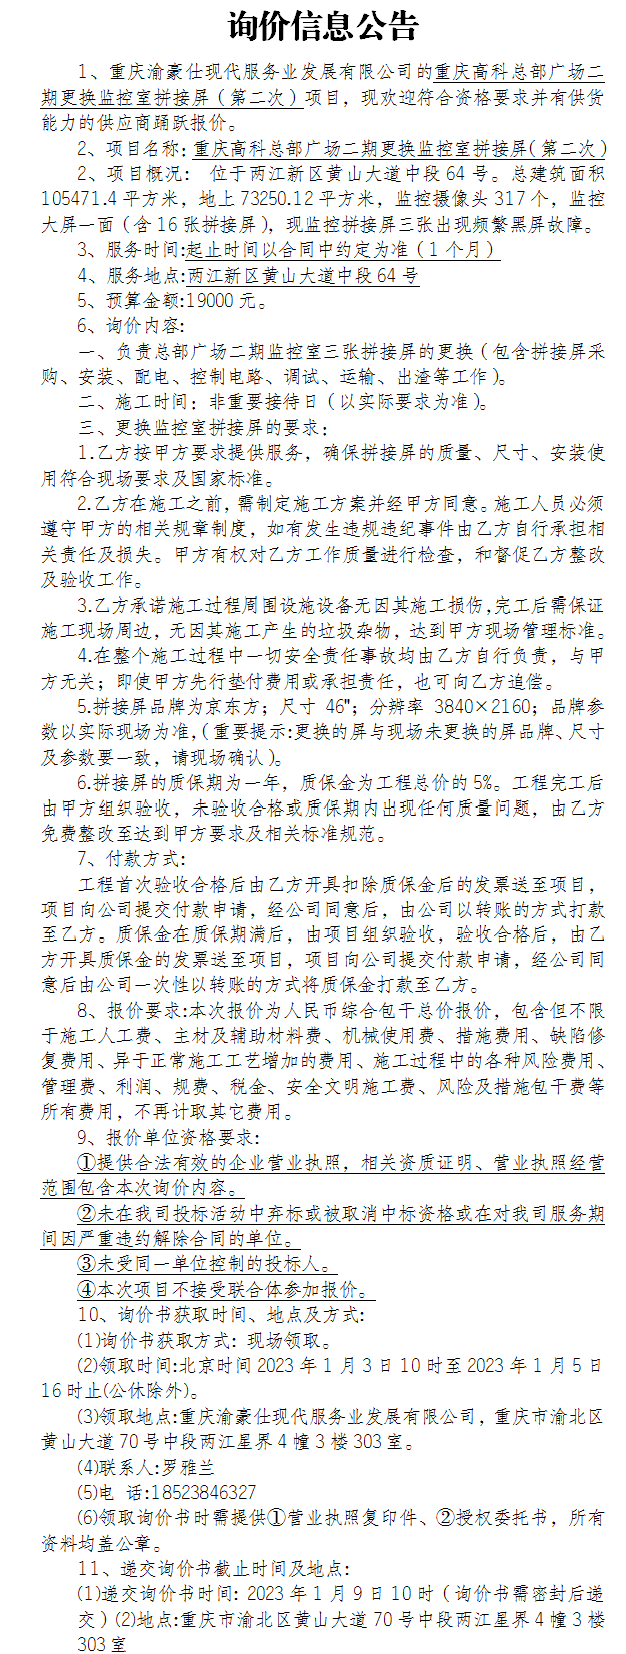 重庆高科总部广场二期更换监控室拼接屏（第二次）询价公告